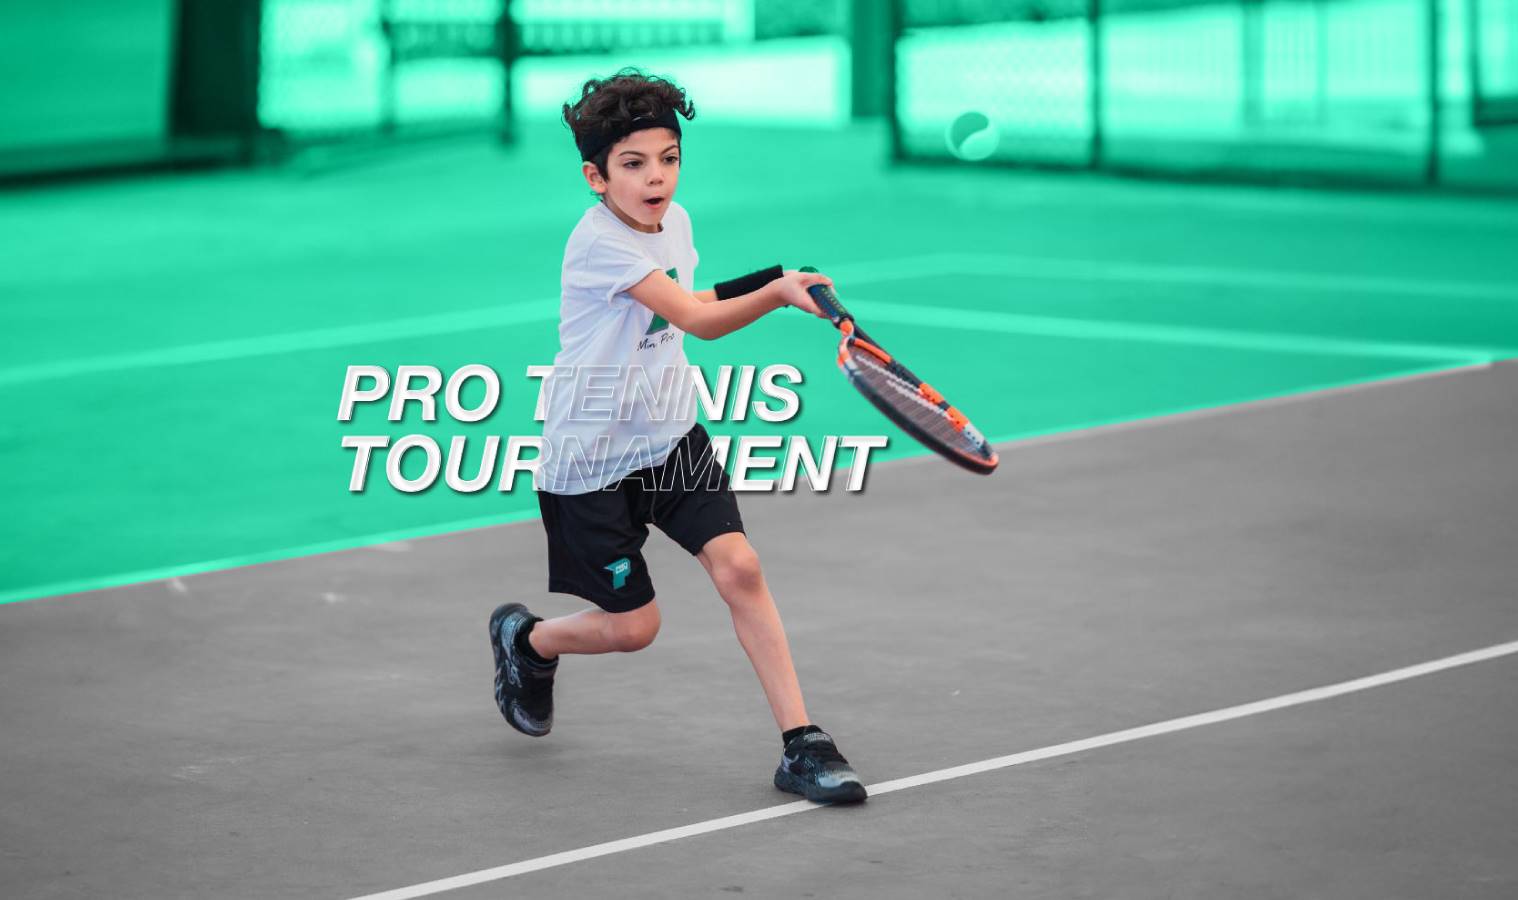 Tennis-Tournament-3-Banner-2 (1).jpg